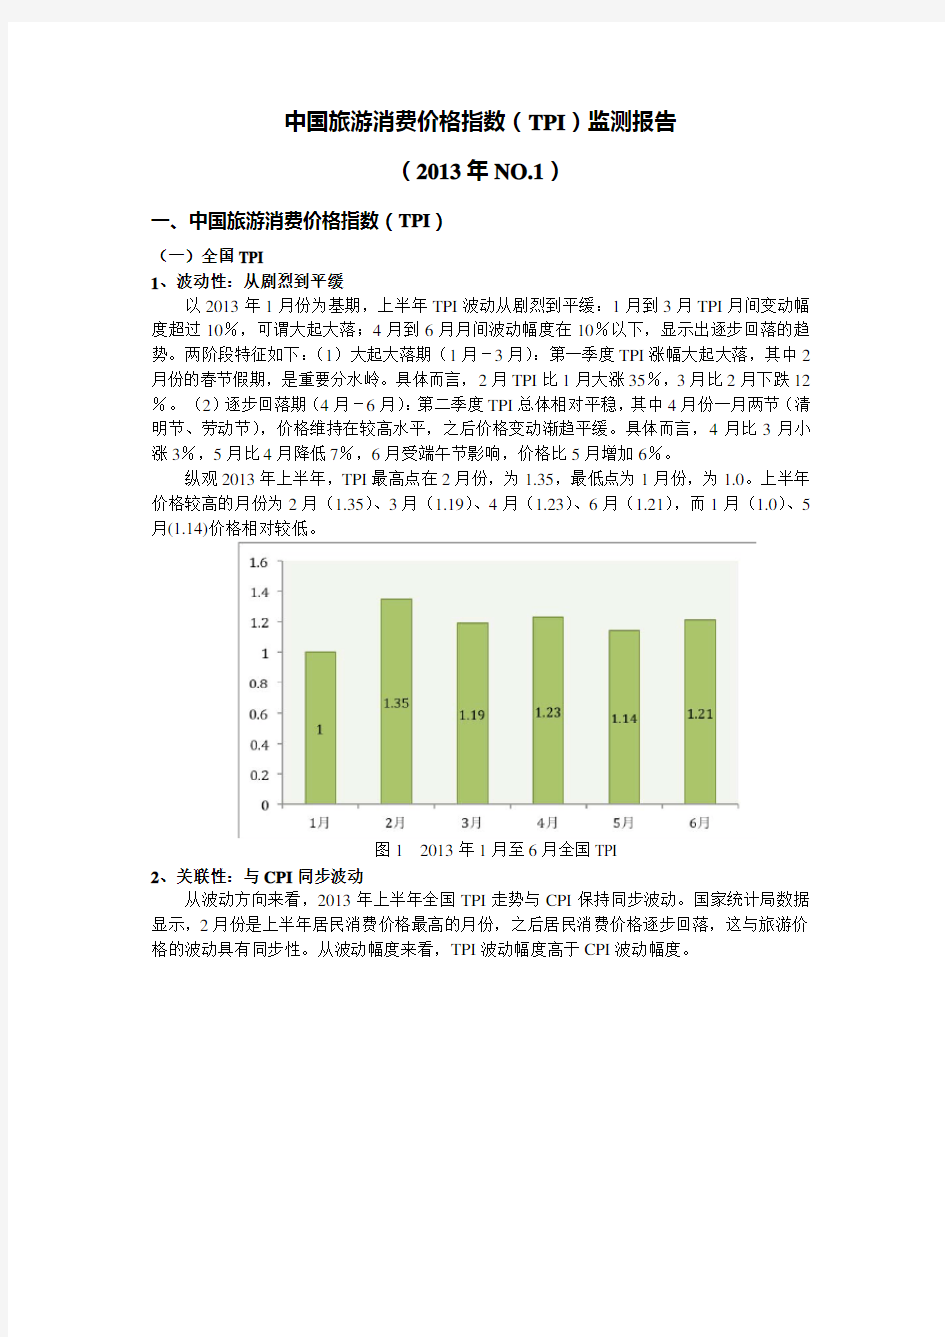 中国旅游消费价格指数(TPI)监测报告(2013年NO.1)